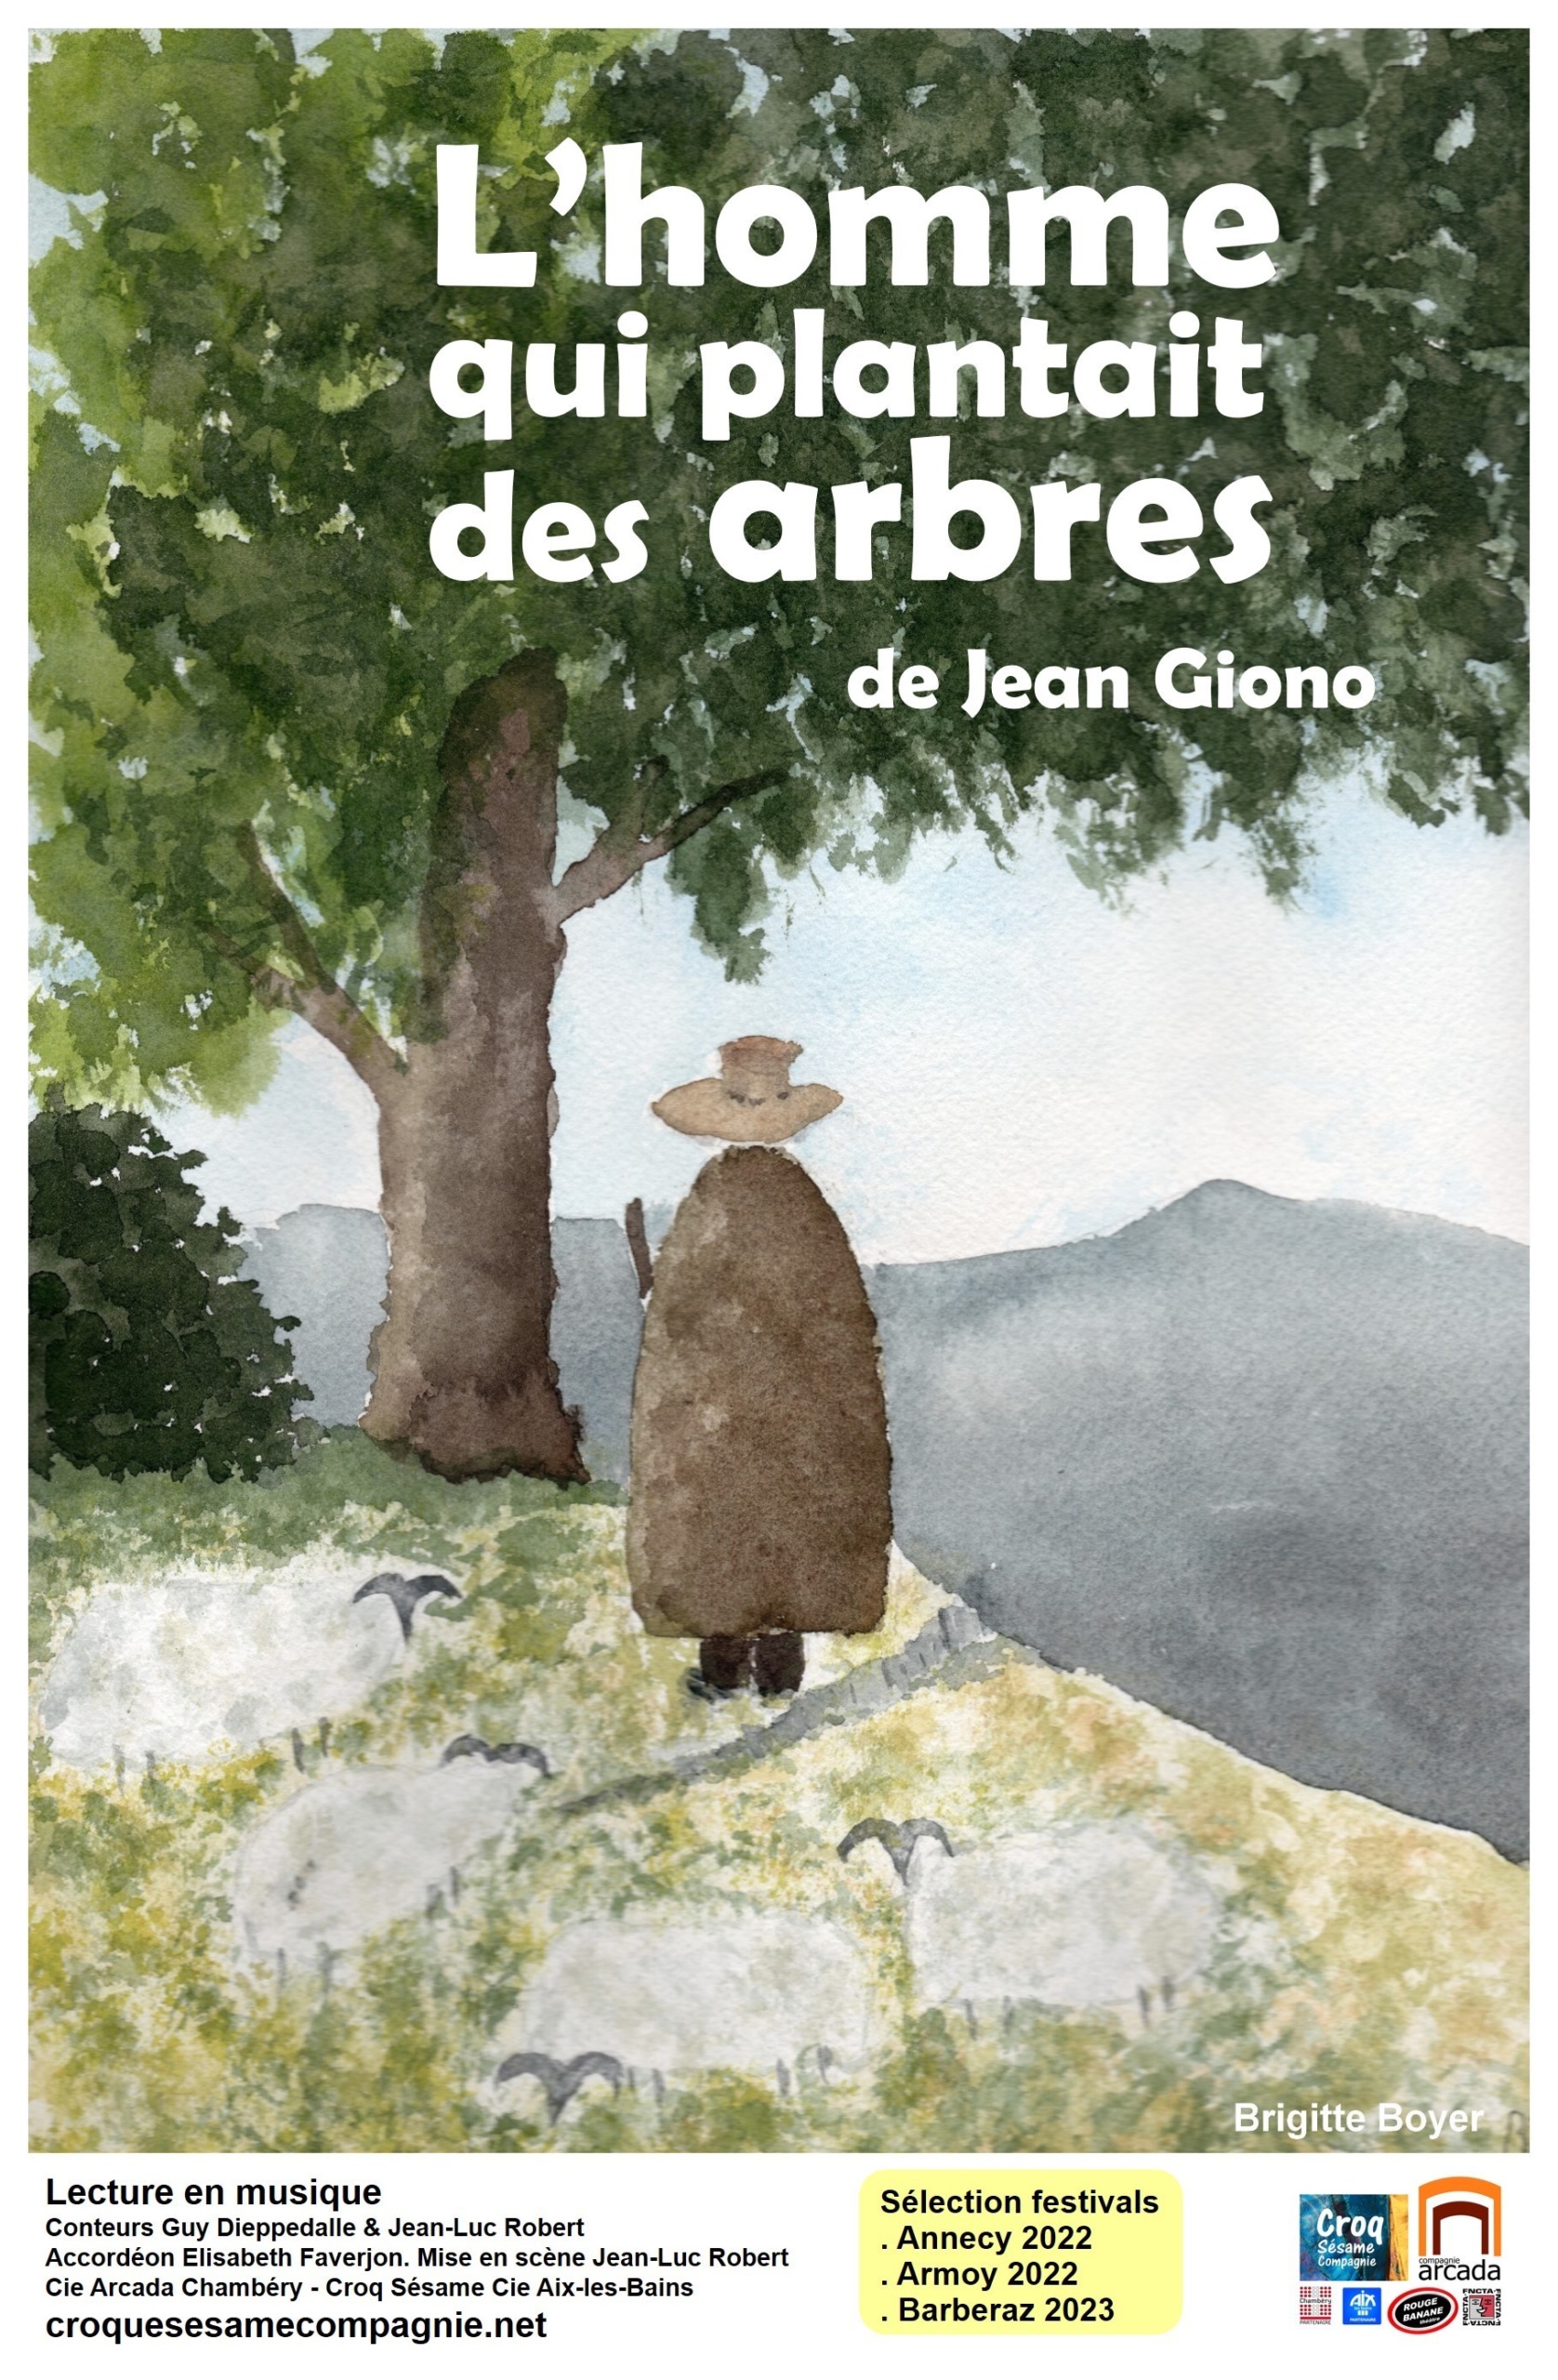 L'homme qui plantait des arbres. De Jean Giono – FNCTA – Auvergne